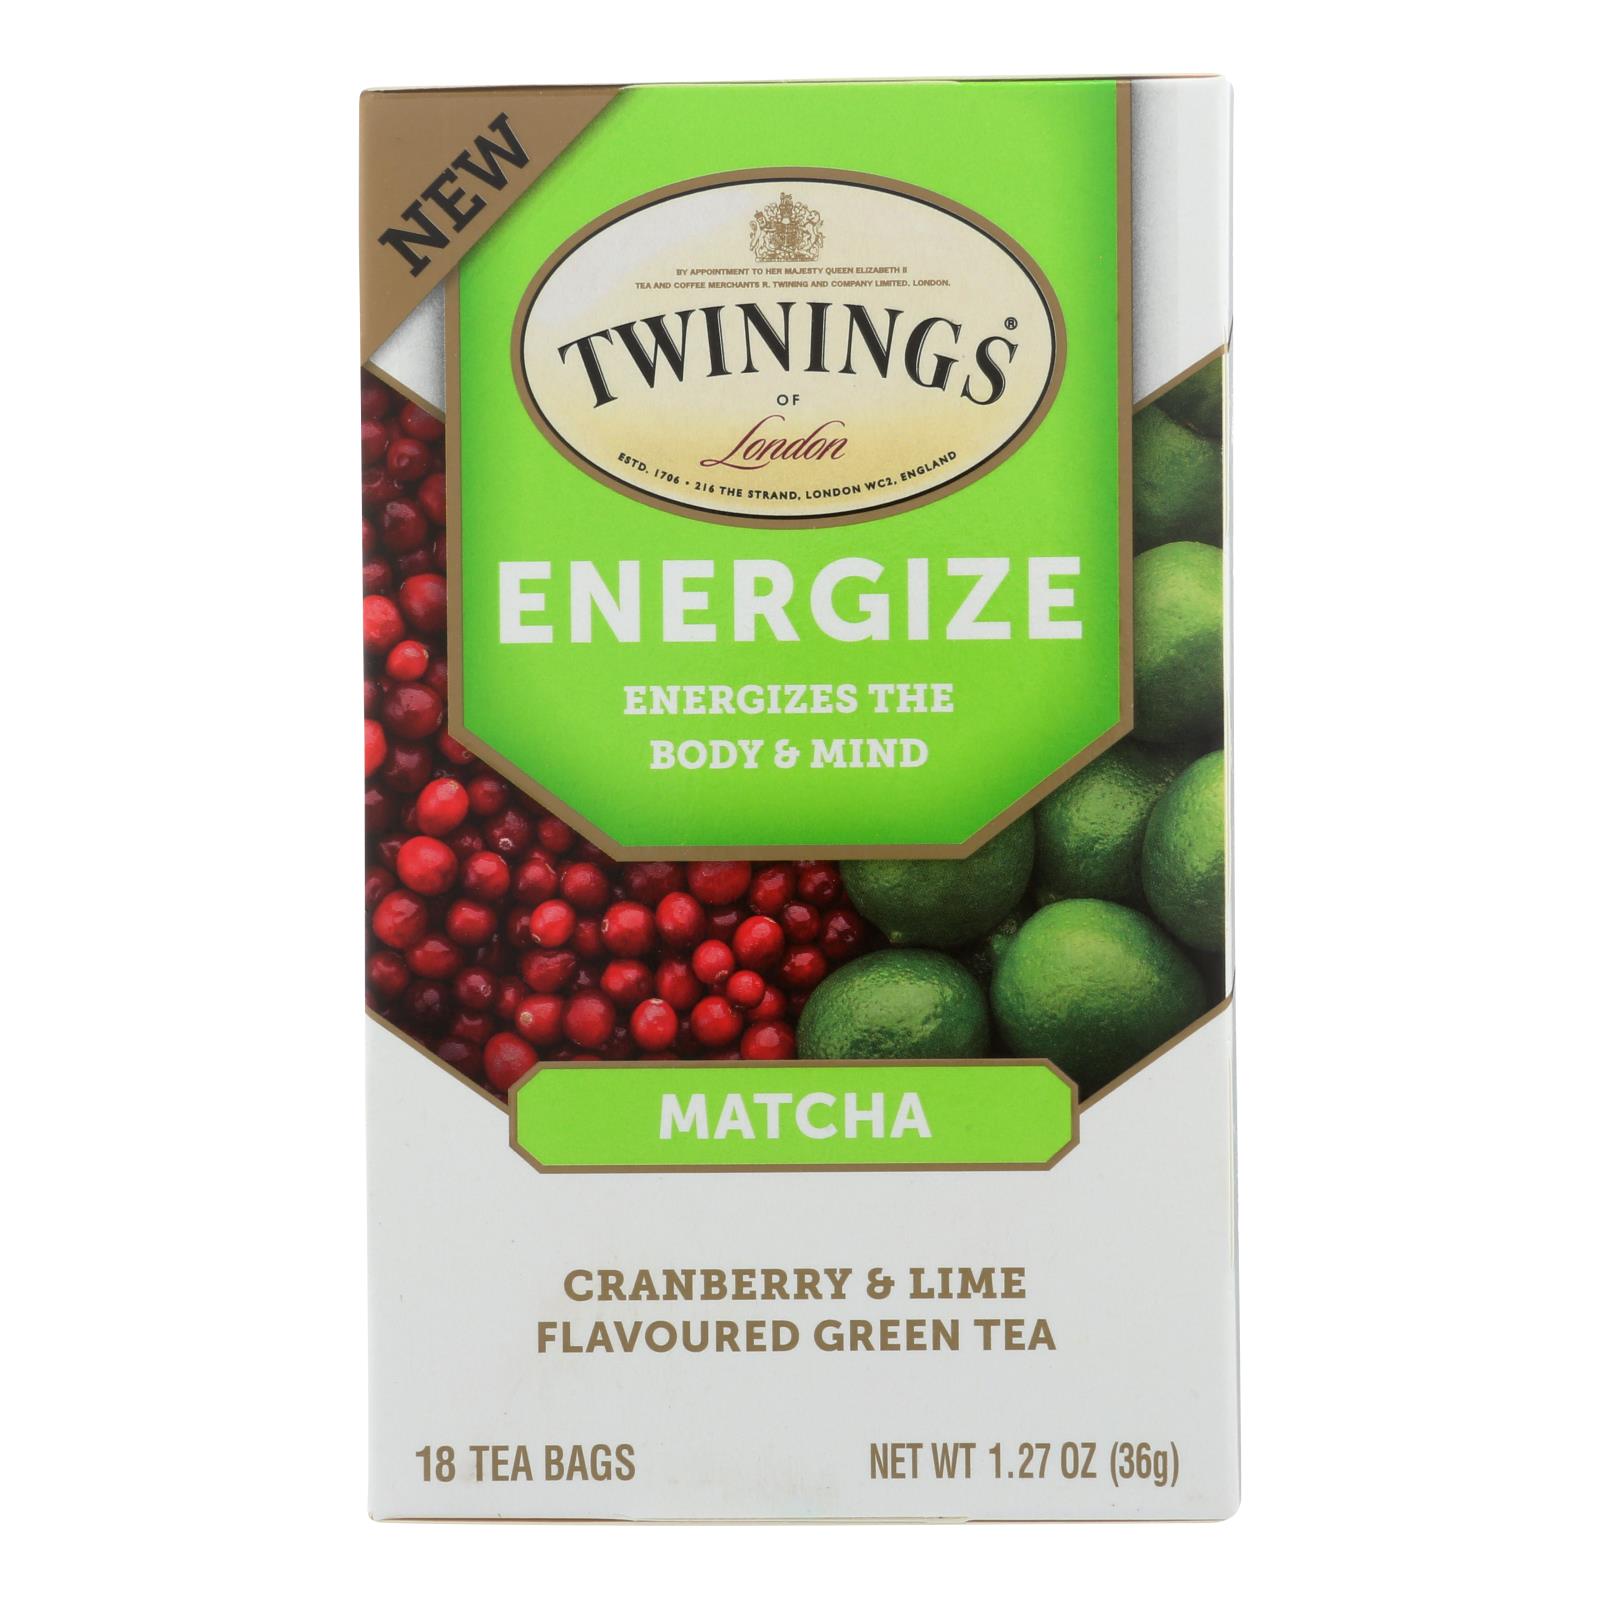 Twinings Tea - Tea Energize Matcha - 6개 묶음상품 - 18 Count